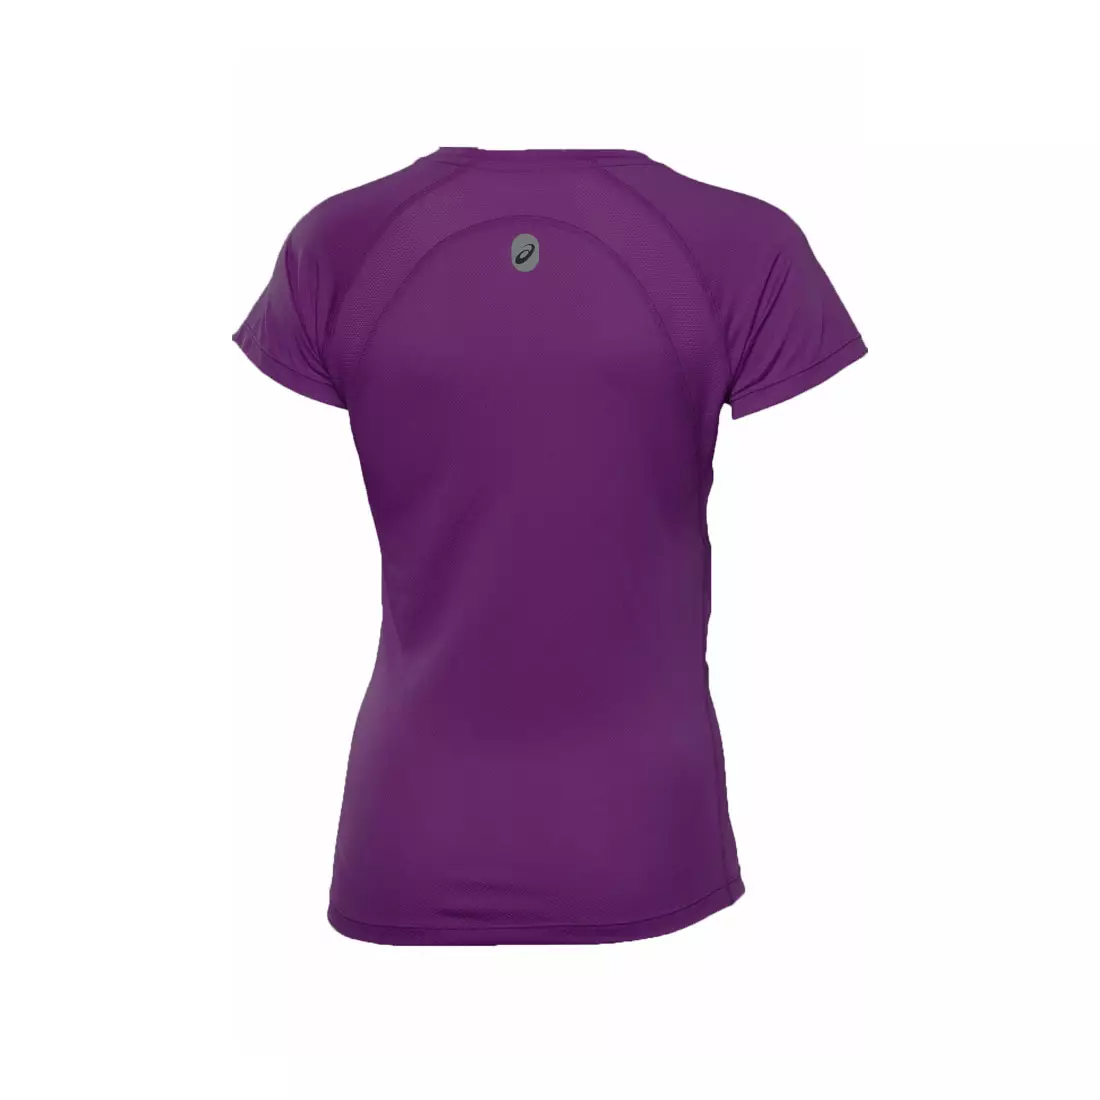 ASICS RUN - 109729-0276 - tricou pentru alergare dama, culoare: violet